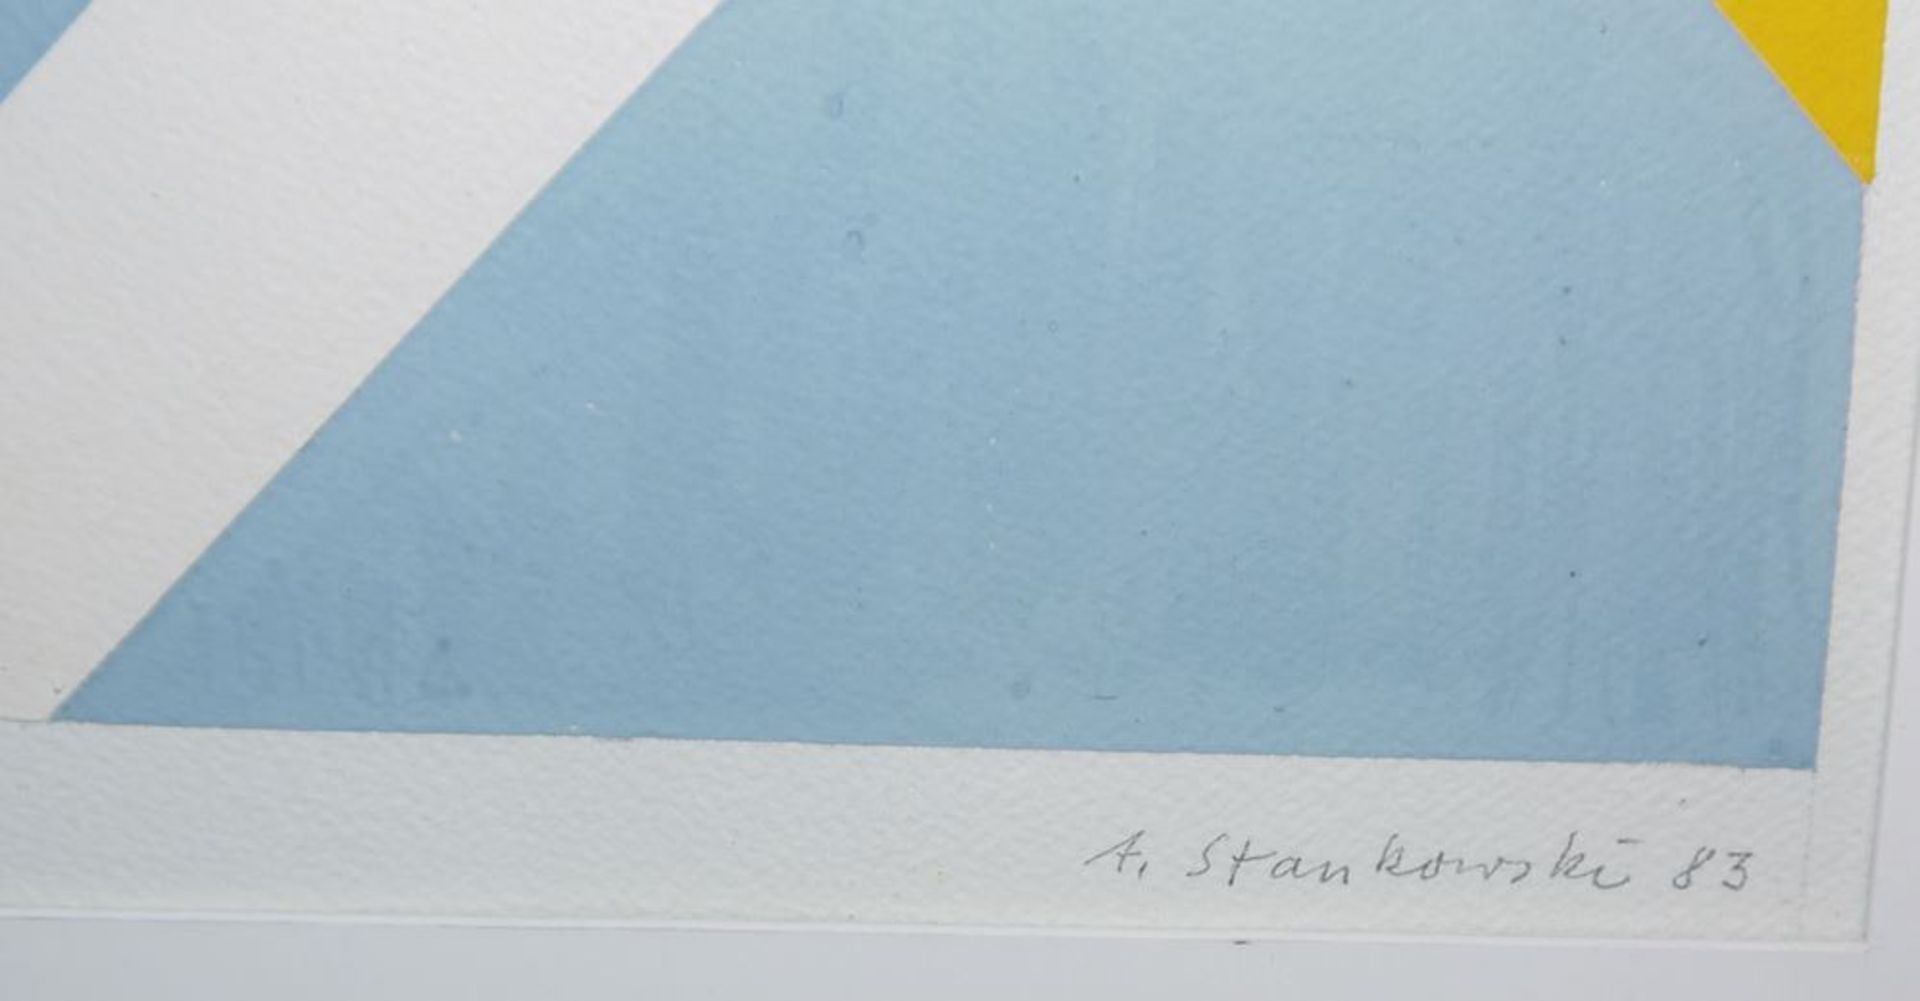 Anton Stankowski, Geometrische Komposition, signierte Gouache von (19)83, gerahmt - Image 2 of 2